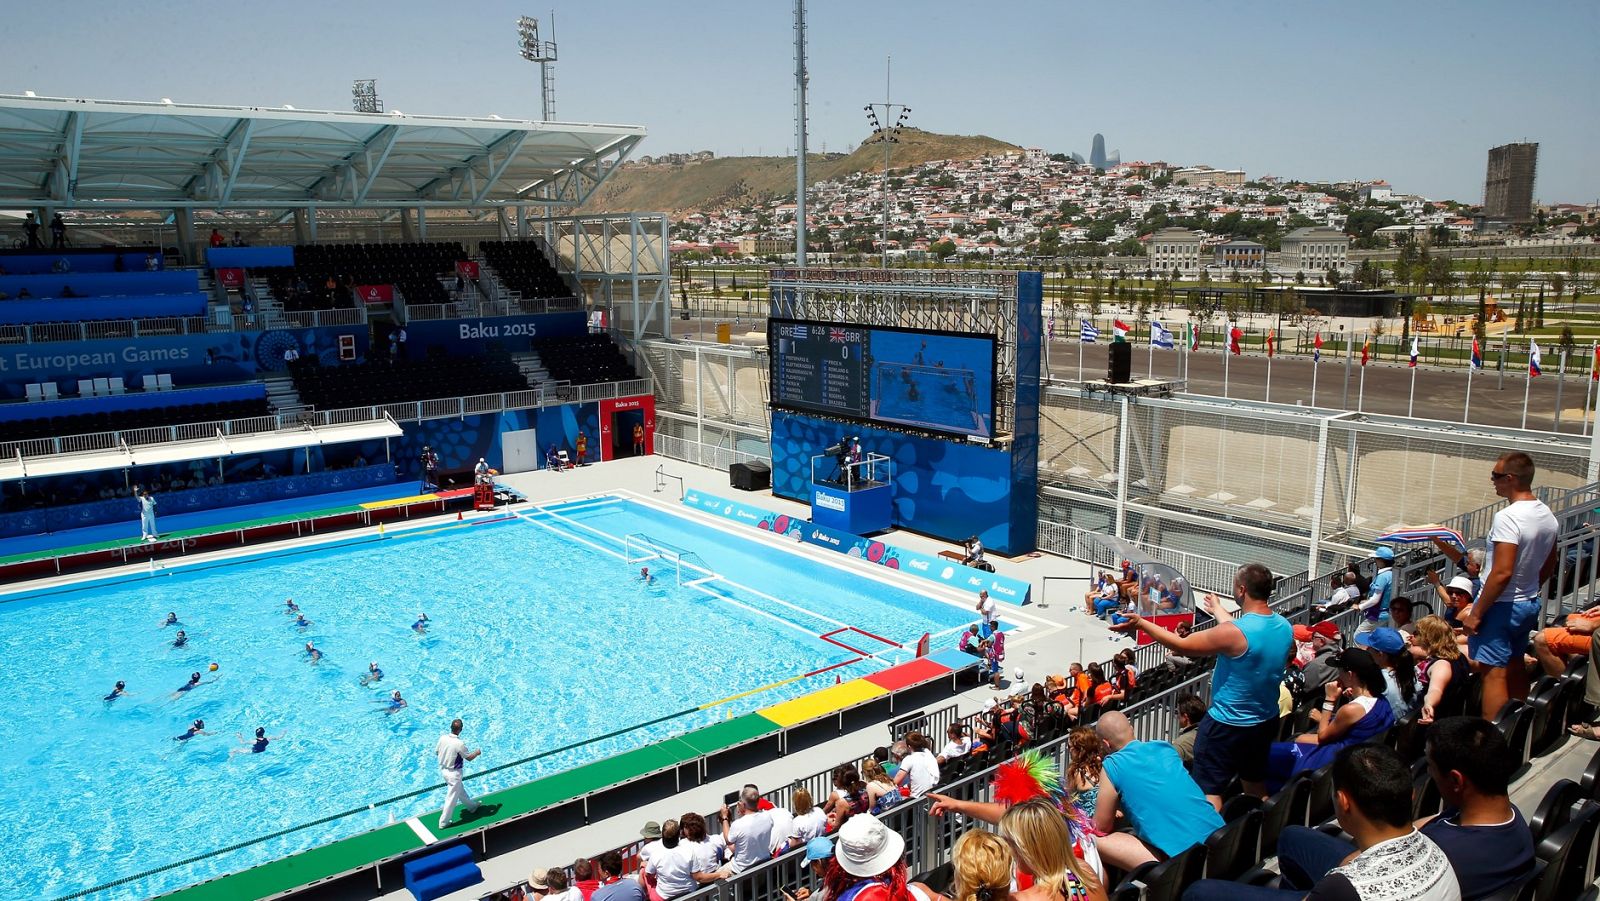 Imagen de una piscina de waterpolo en los Juegos de Bakú.